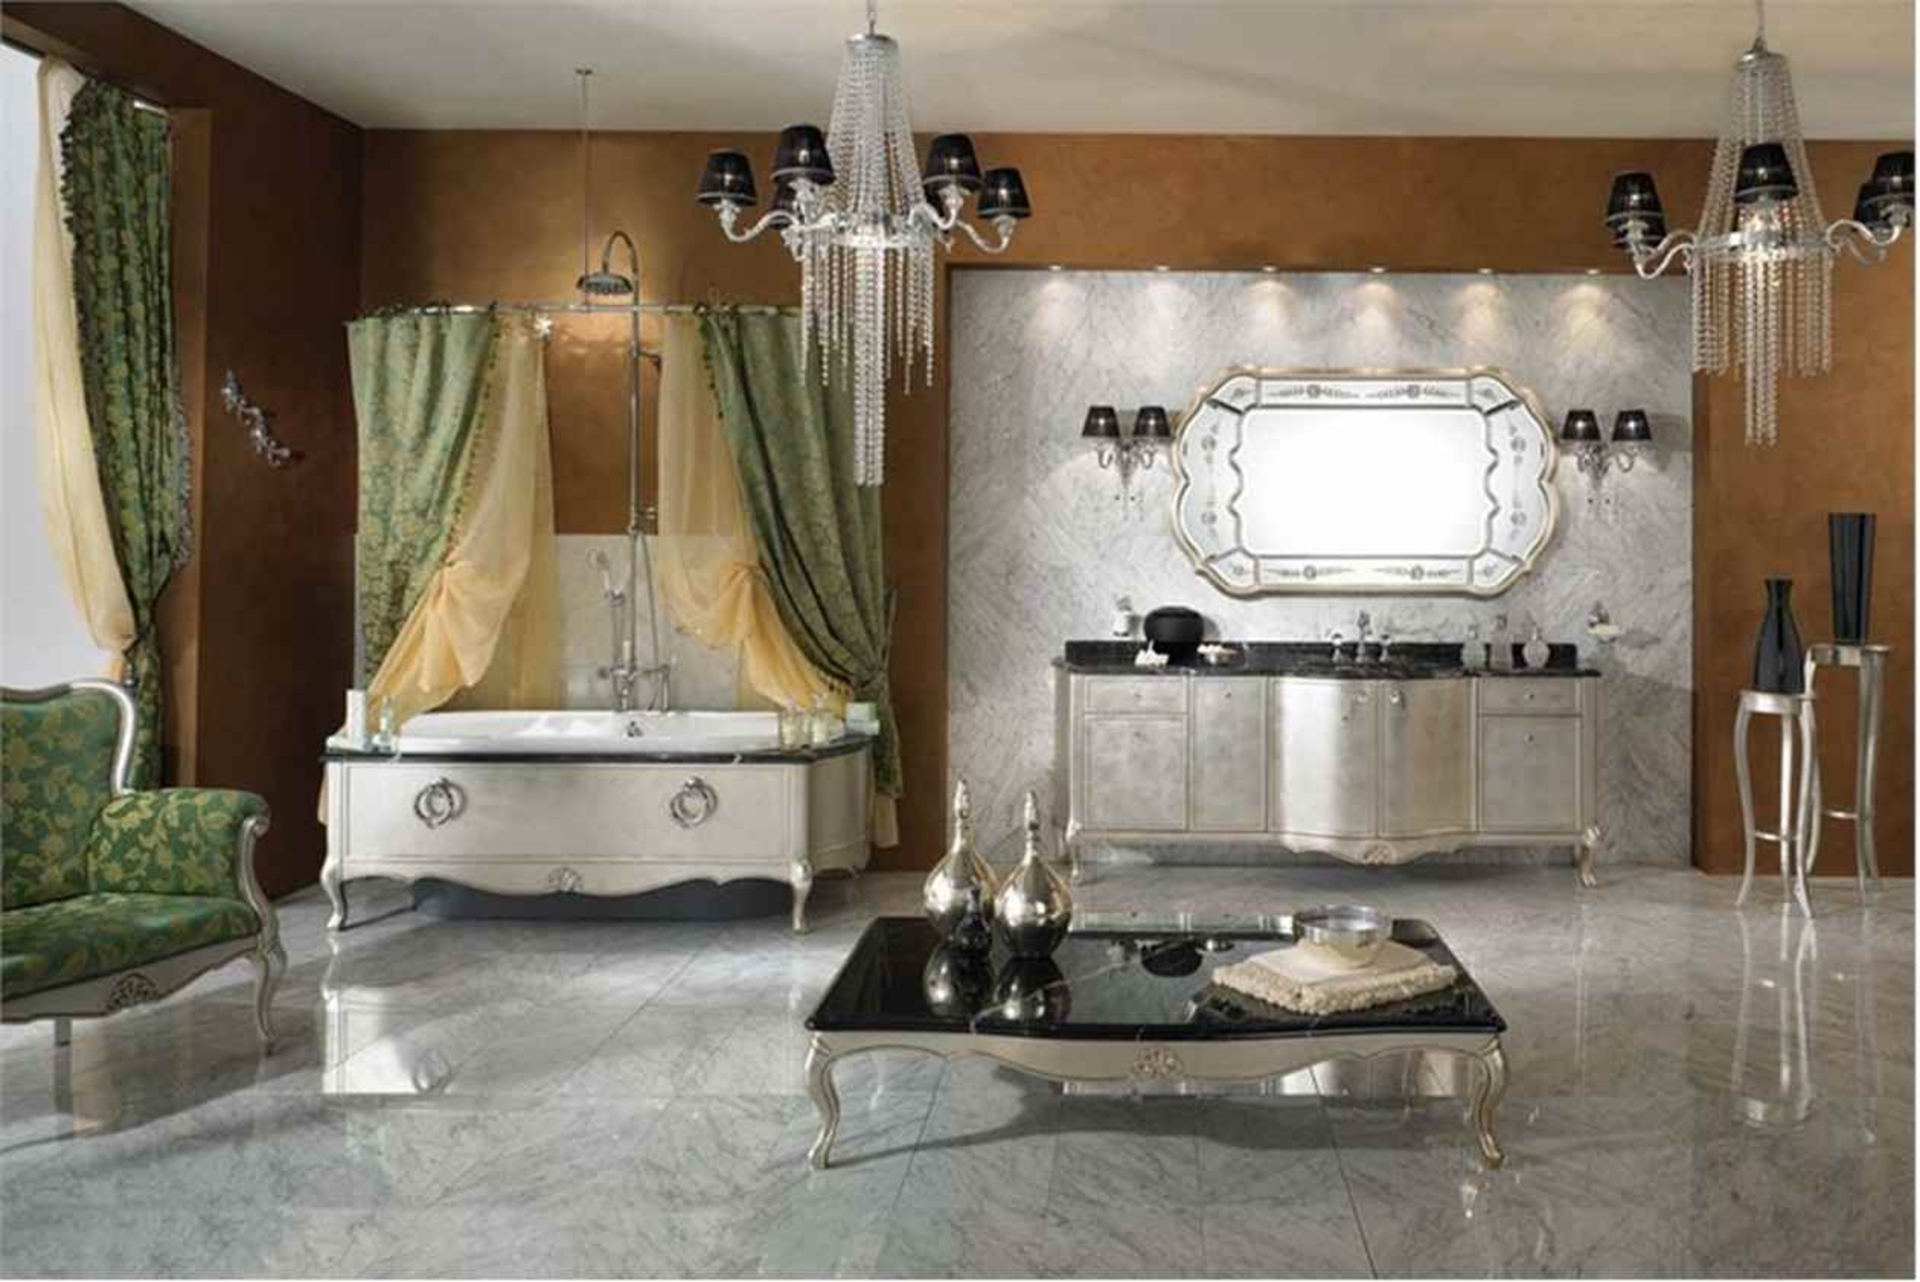 Композиция для ванной gold componibile мебель для ванных комнат фабрика lineatre - комодо.
